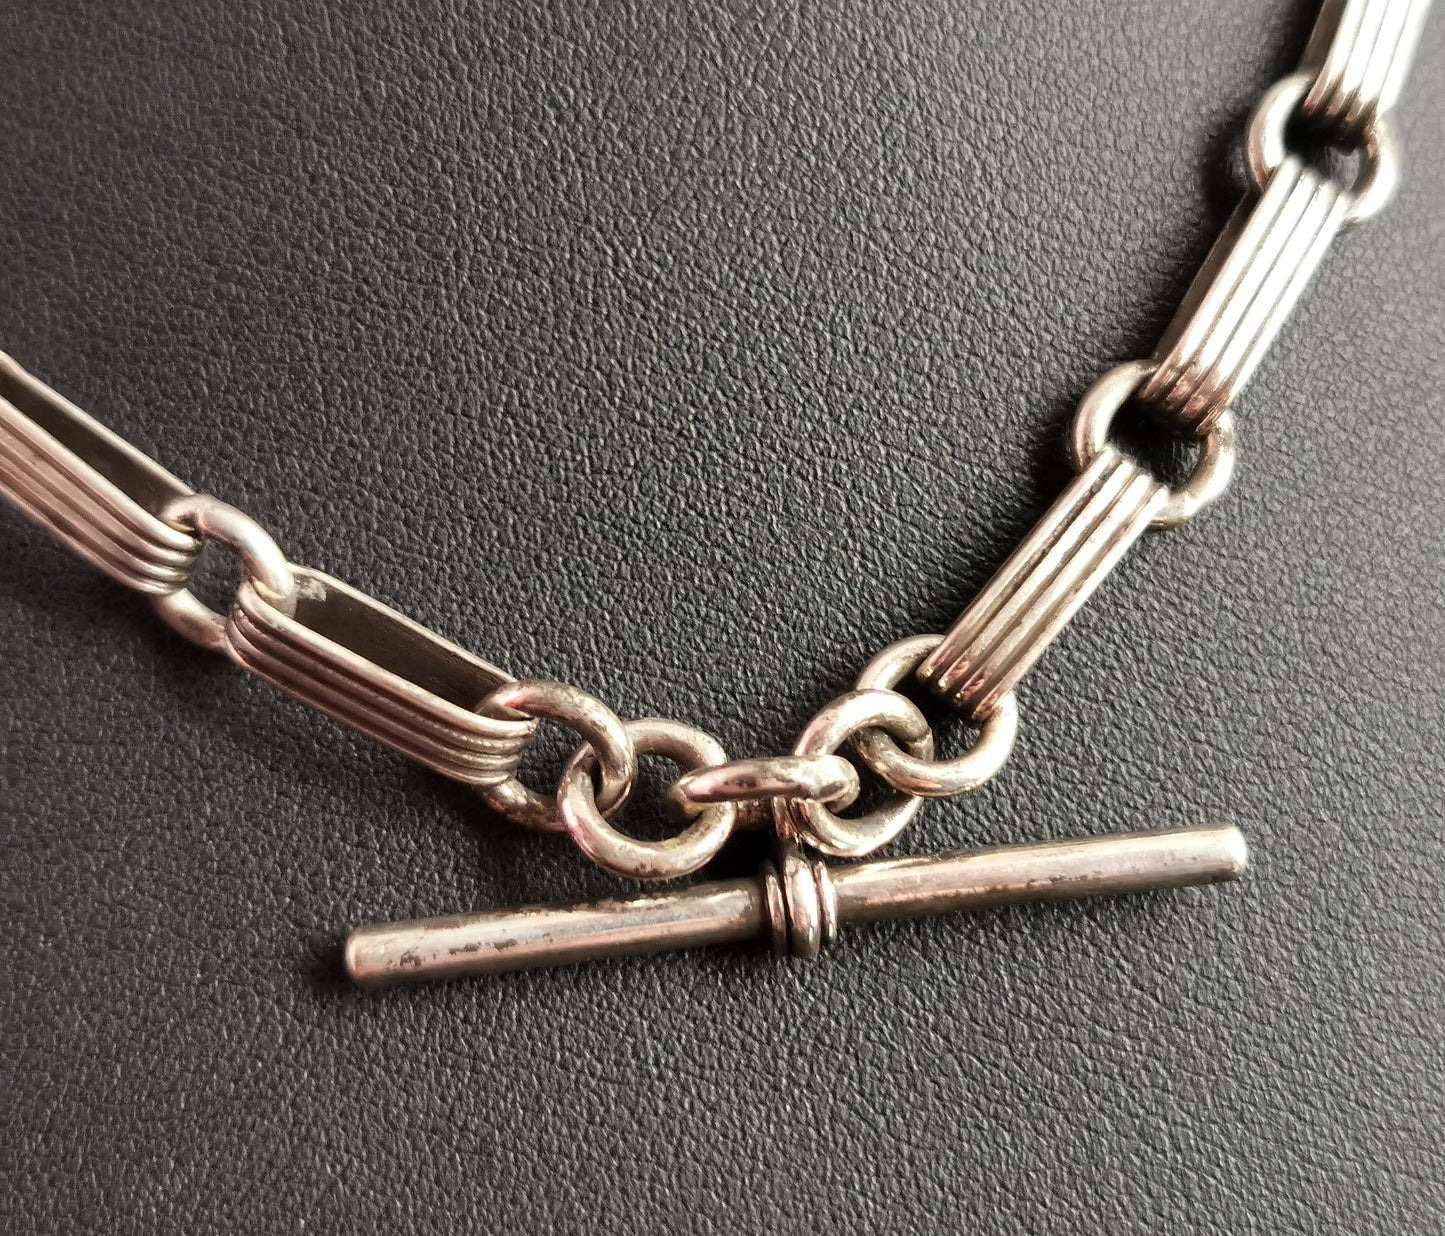 Antique Victorian silver Albert chain, watch chain, fancy link